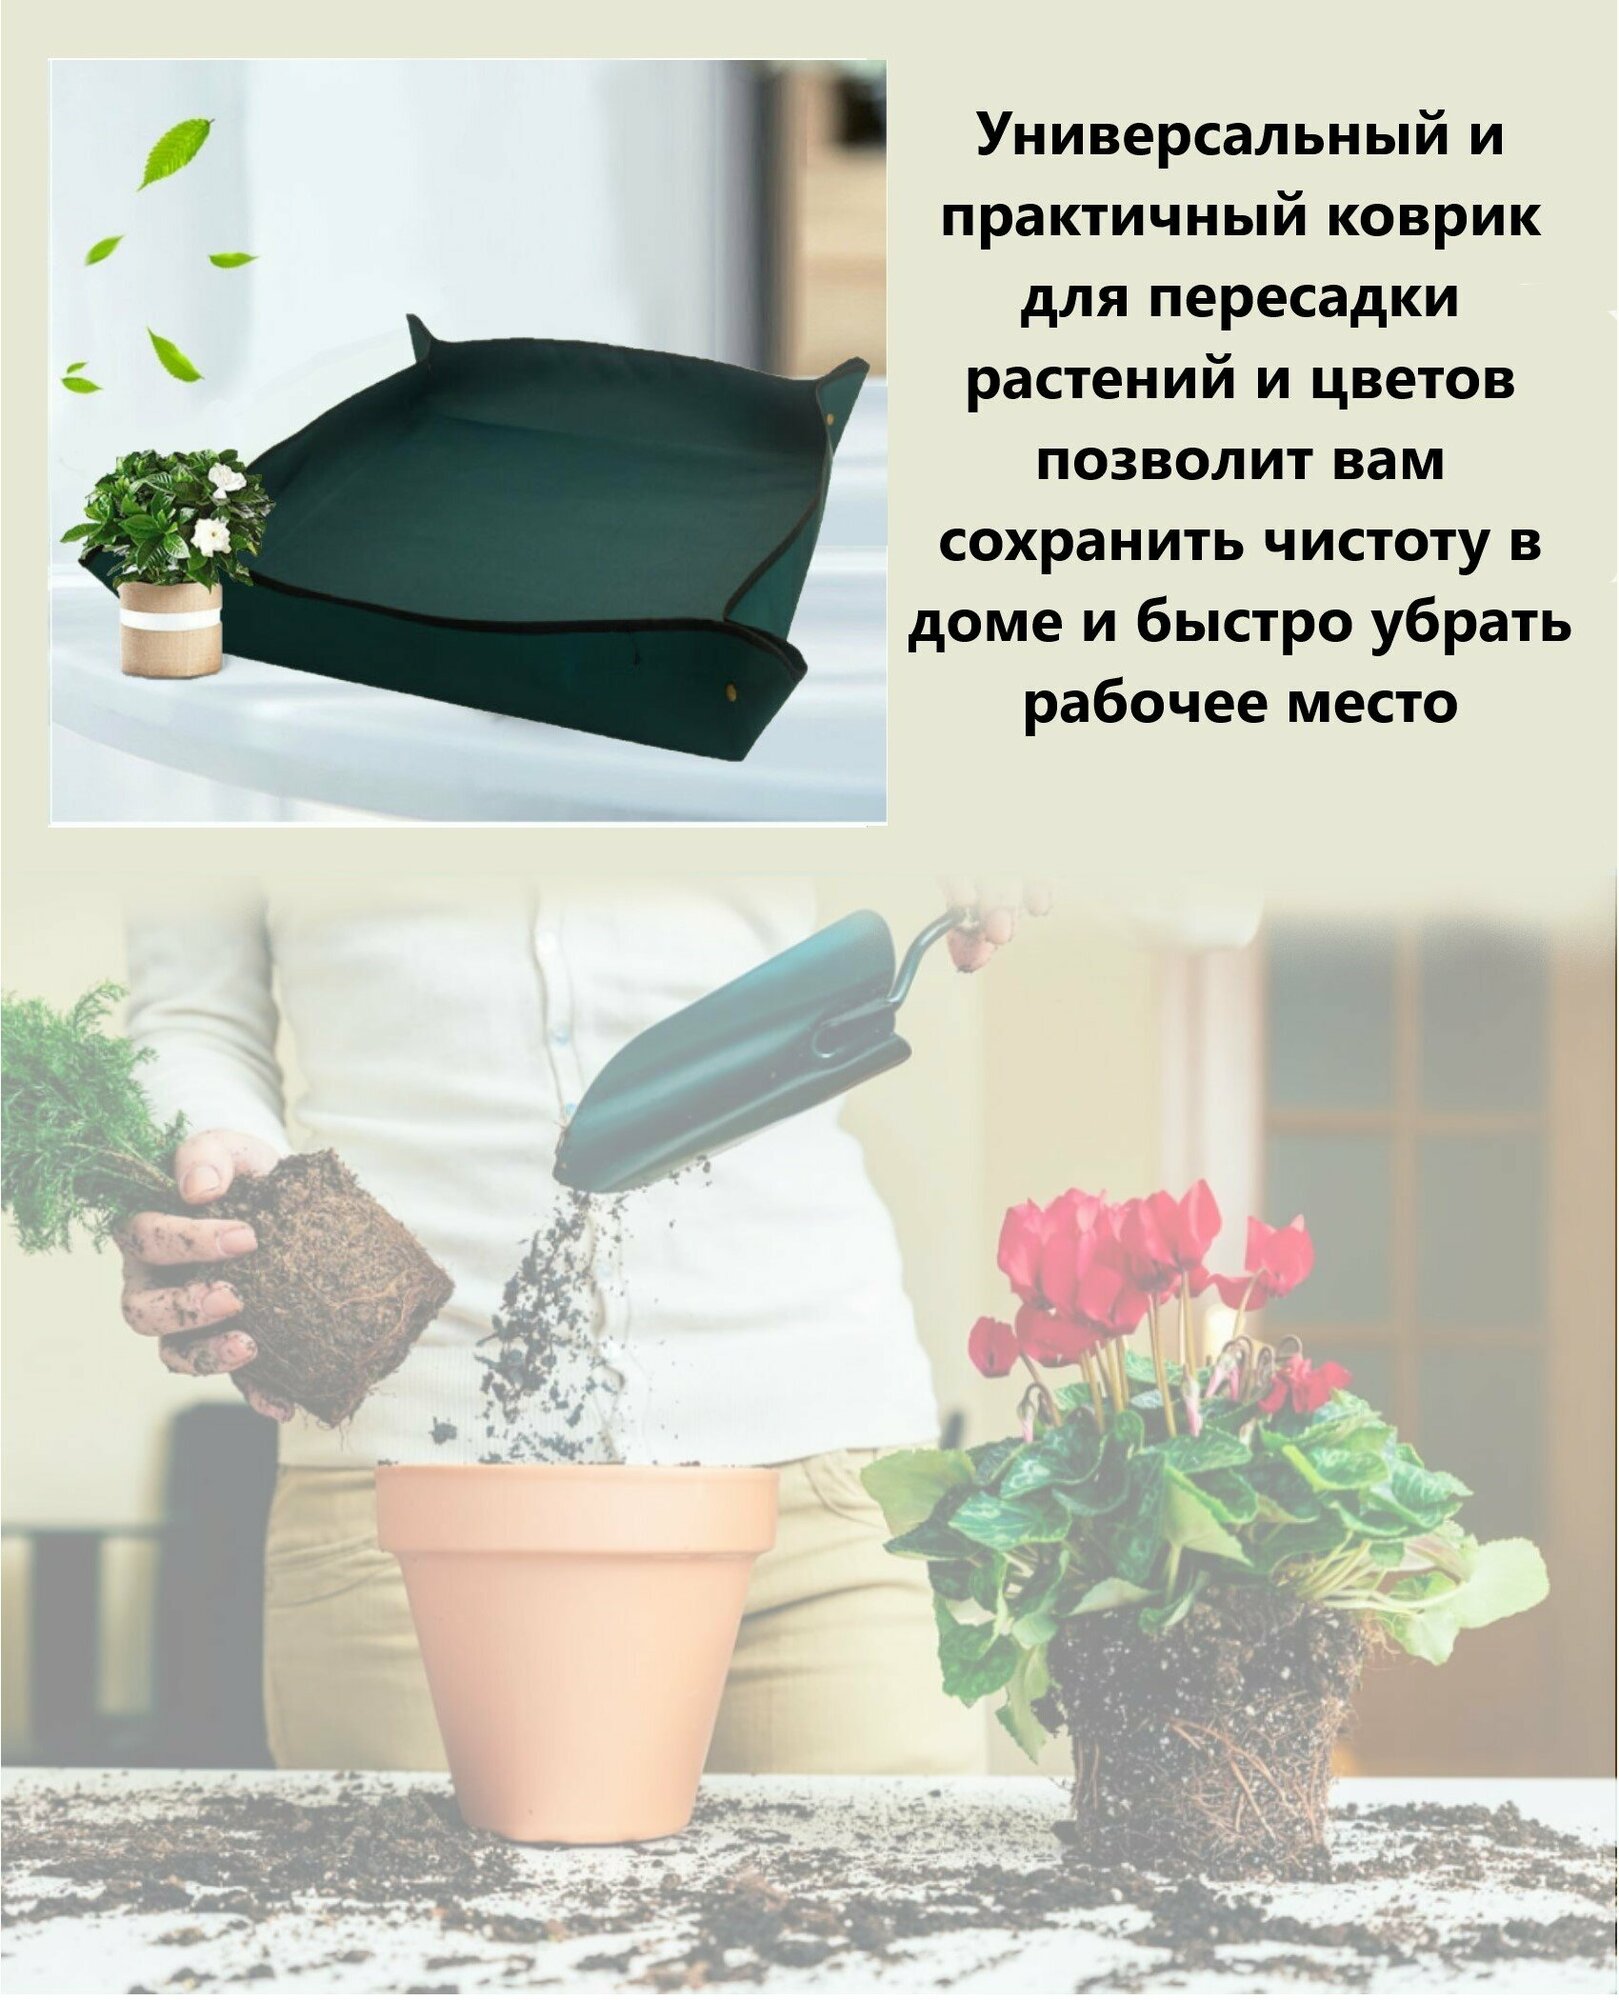 Коврик для пересадки растений и цветов темно зеленый